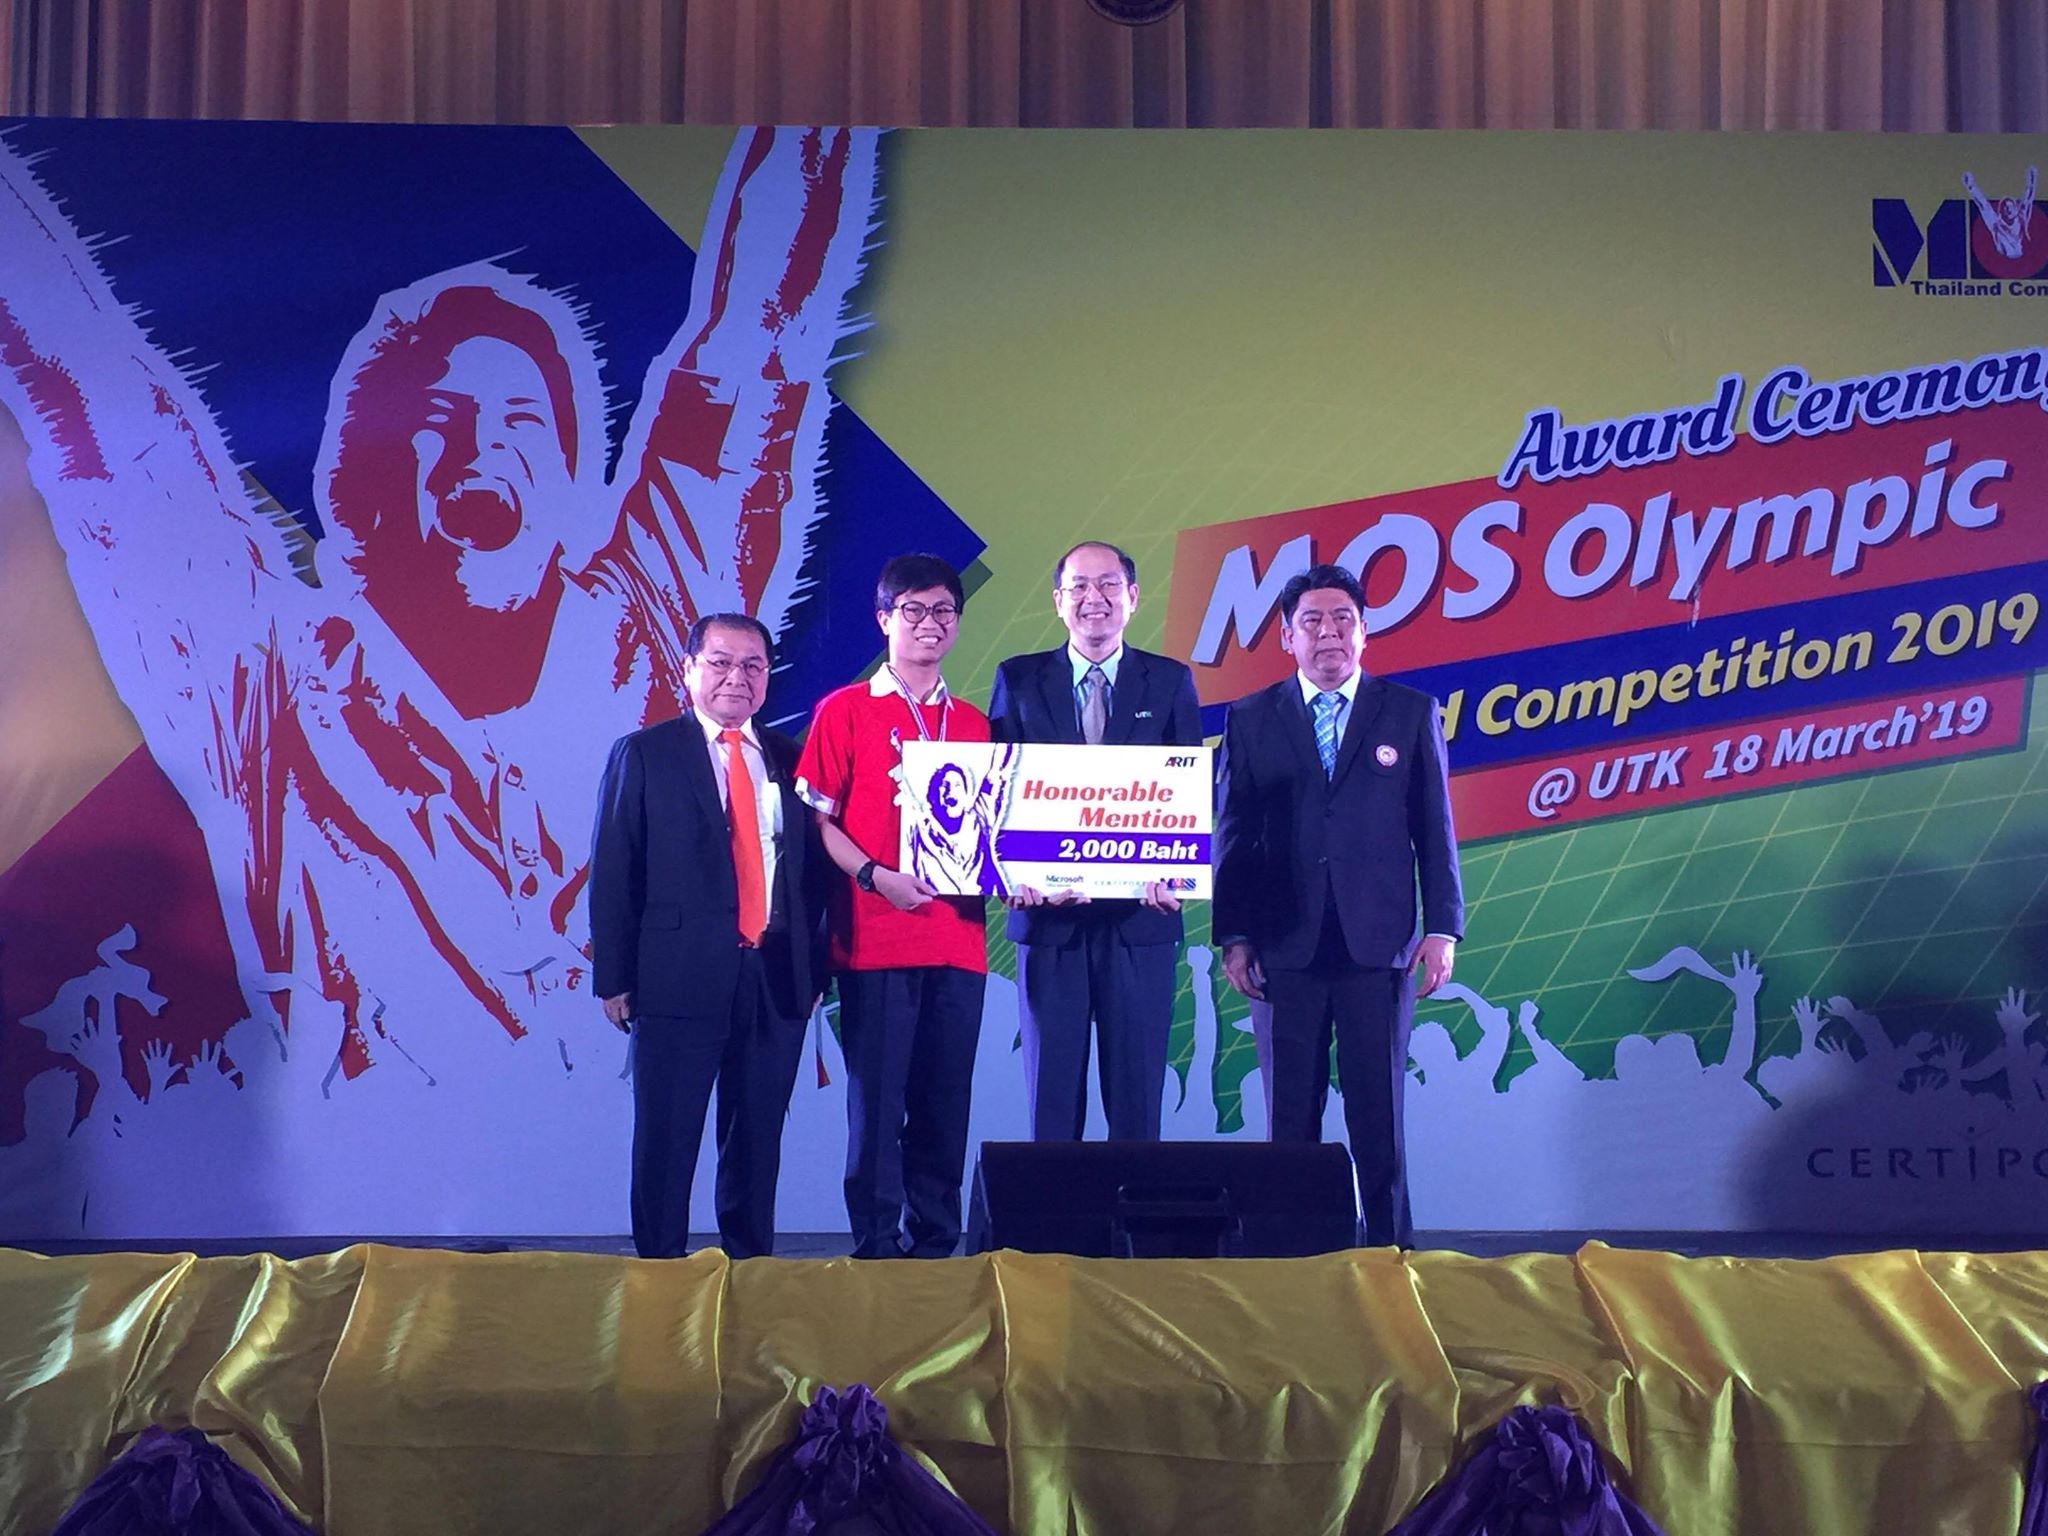 สารสนเทศคว้าเหรียญทองMOS Olympic Thailand Competition 2019